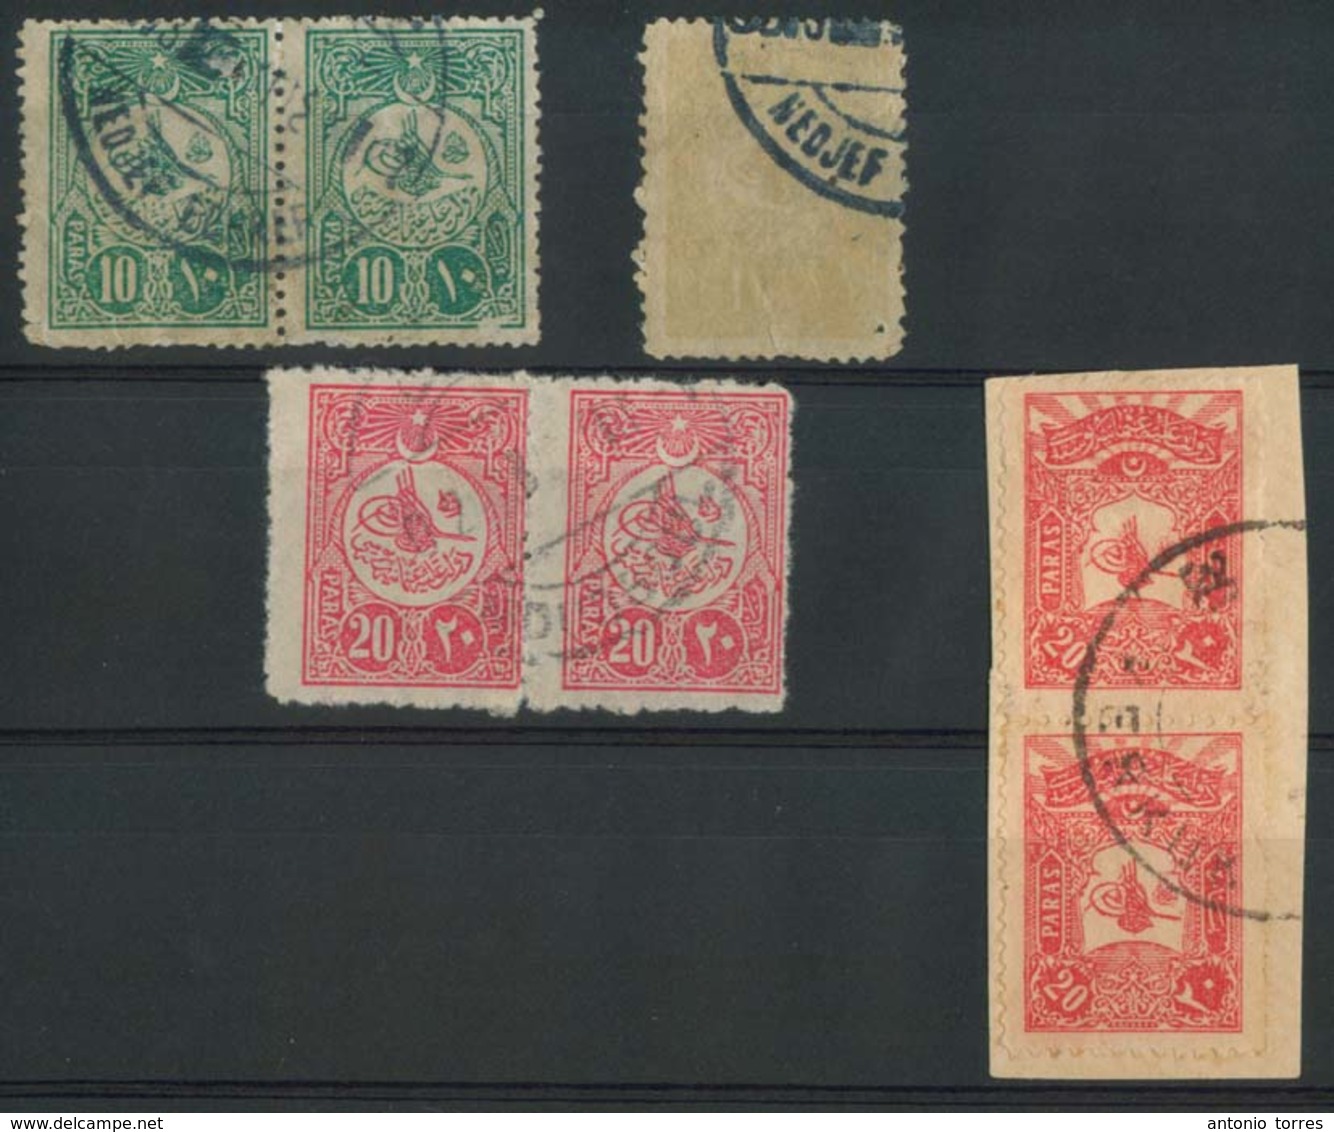 IRAQ. C.1909. Turkish Period. 7 Stamps, Cancelled Nedjef (3), Mossoul (2), Kerkuk (2). Fine Group. - Iraq